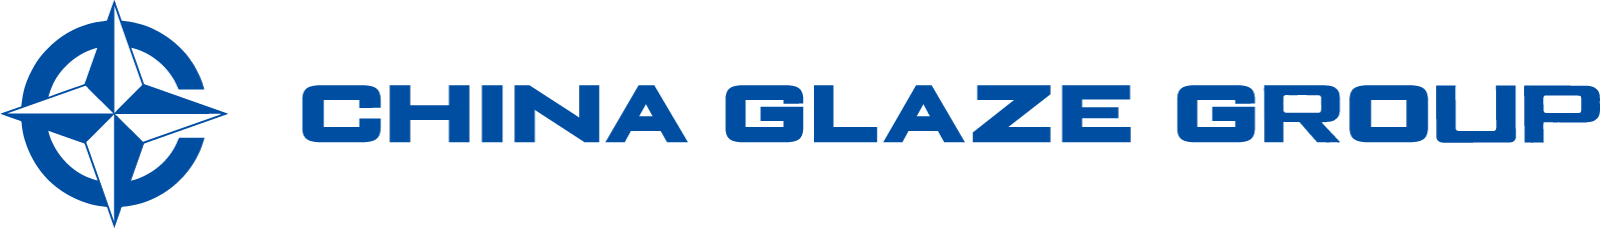 プライバシーポリシー＆サイトポリシーページ、台湾本社のChina Glaze Co., Ltd.（和名：チャイナグレーズ株式会社）はガラス粉末やセラミックスピグメントの製造カンパニーです。各種ガラスフリット(ガラスの微粉)を供給してます。特殊ガラス微粉末、セラミック釉薬、ガラスフリット、ガラスパウダー、ガラス粉末を利用した、LTCC、PiG、顔料、建材、などの材料として研究開発から製造販売をサポートします。2022年5月に日本窓口としてChina Glaze 東京デスクを設立。